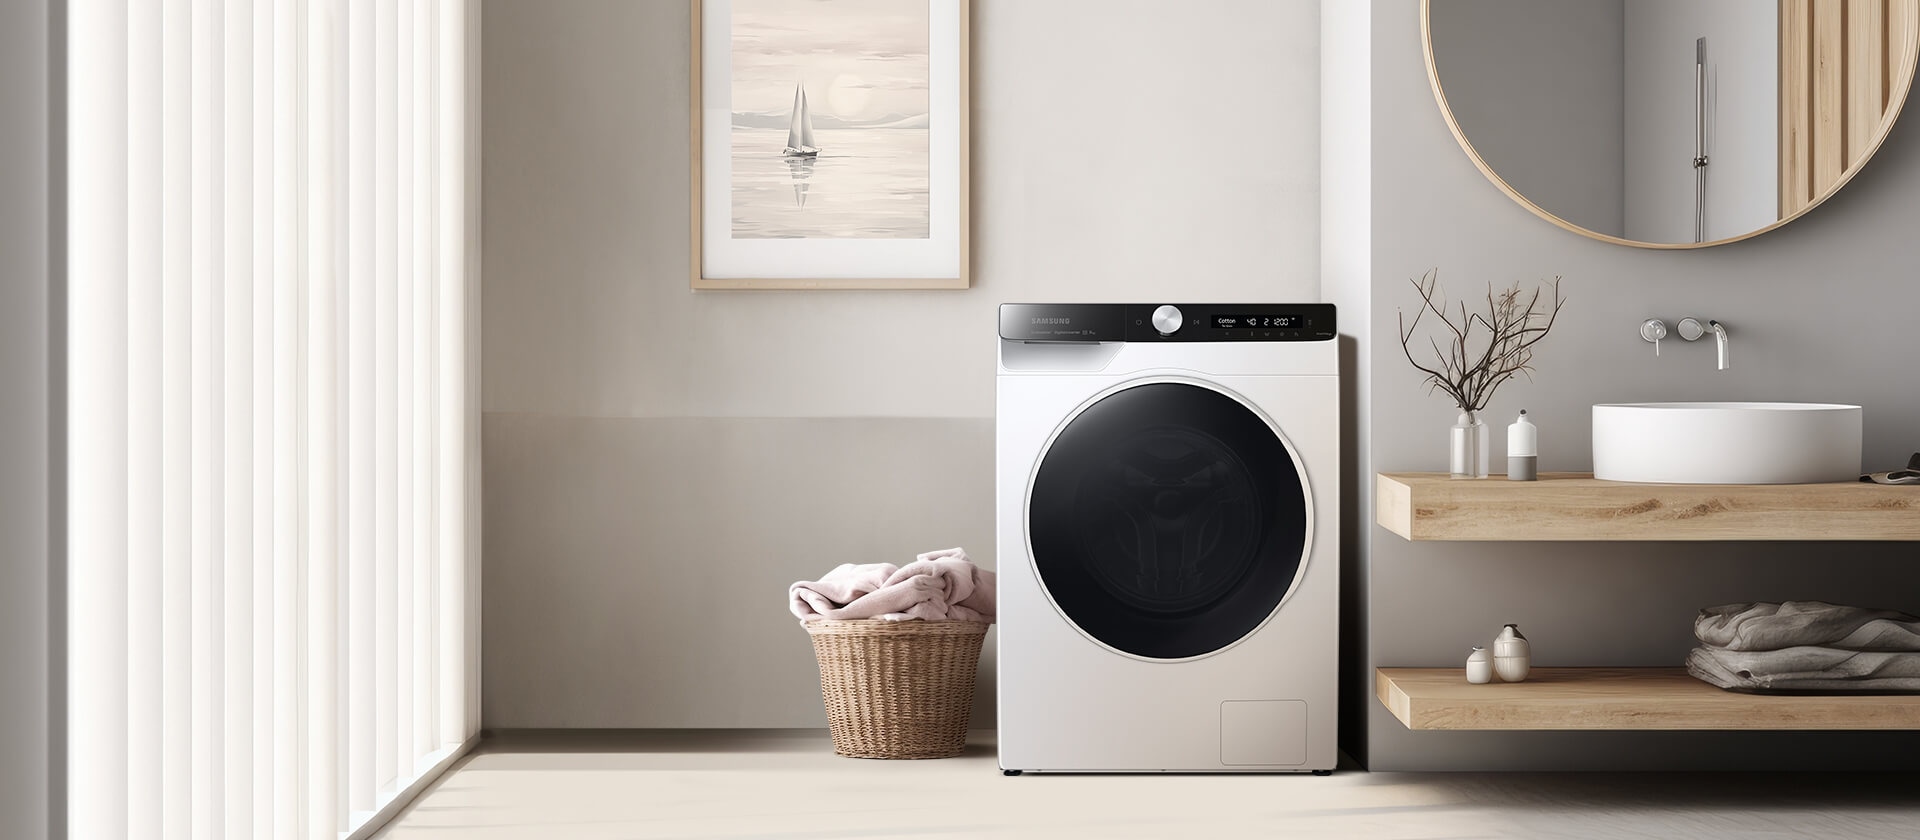 Умная стирка со стиральной машиной AI Eco bubble с искусственным интеллектом